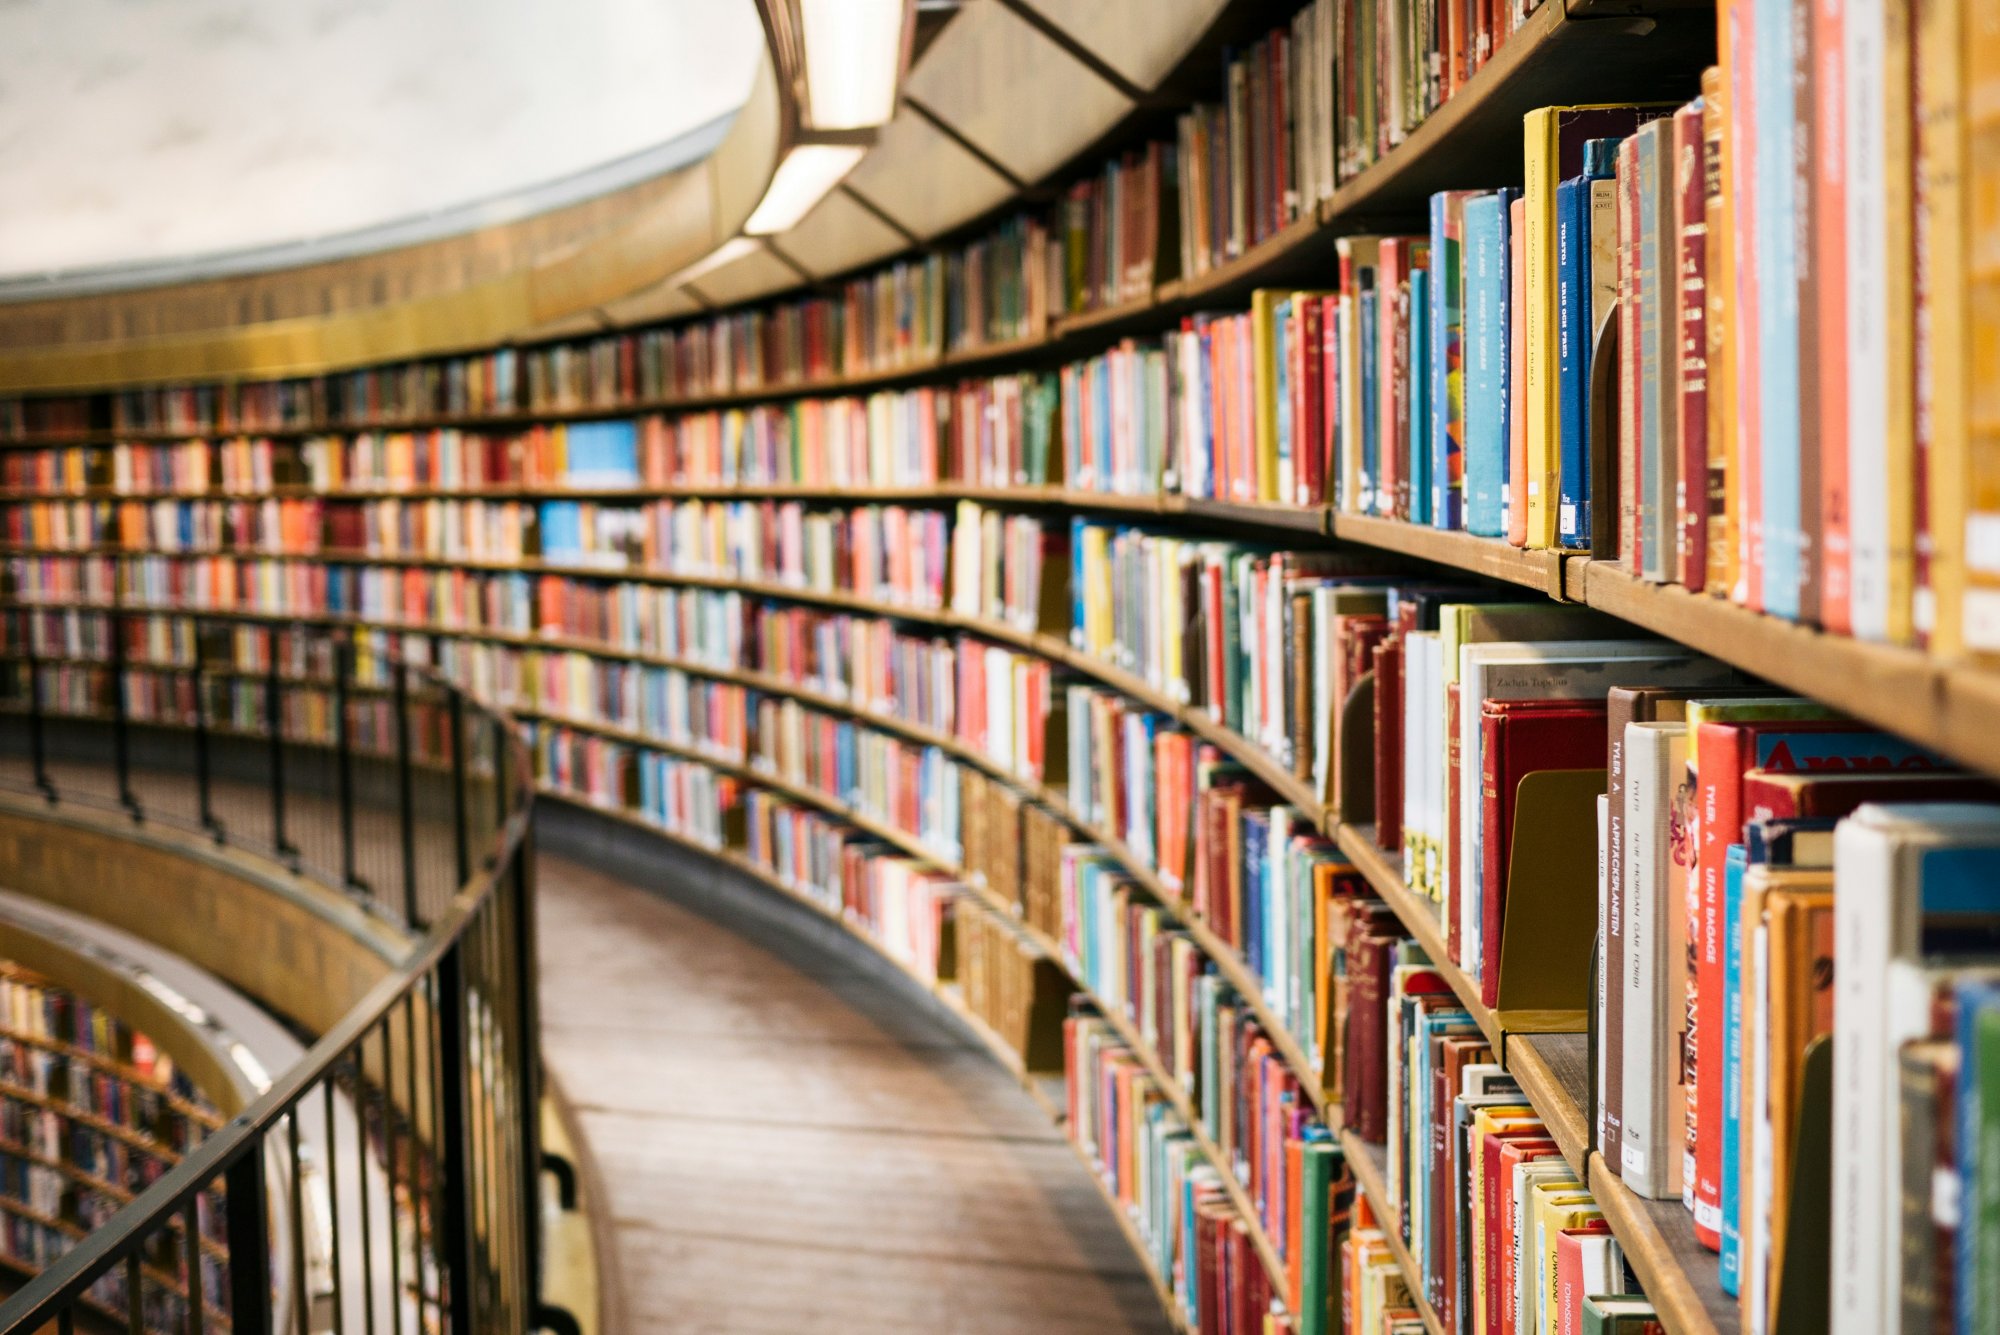 Φινλανδία: Βιβλίο επεστράφη σε δανειστική βιβλιοθήκη με καθυστέρηση... 84 ετών